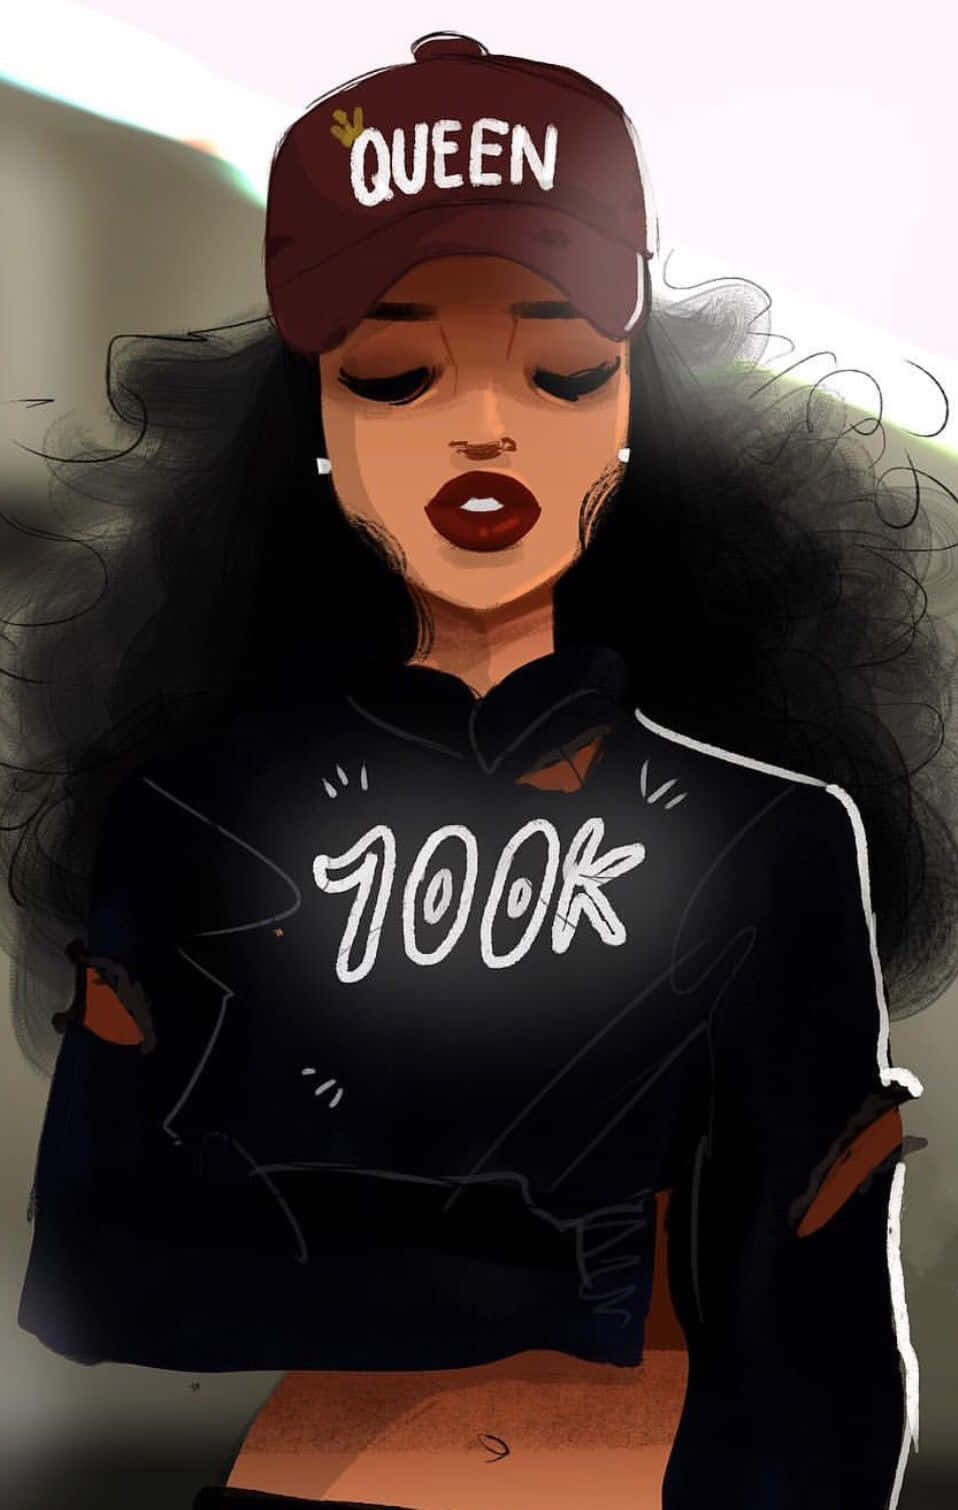 Queen Cap Animated Black Girl100k Sweatshirt Wallpaper